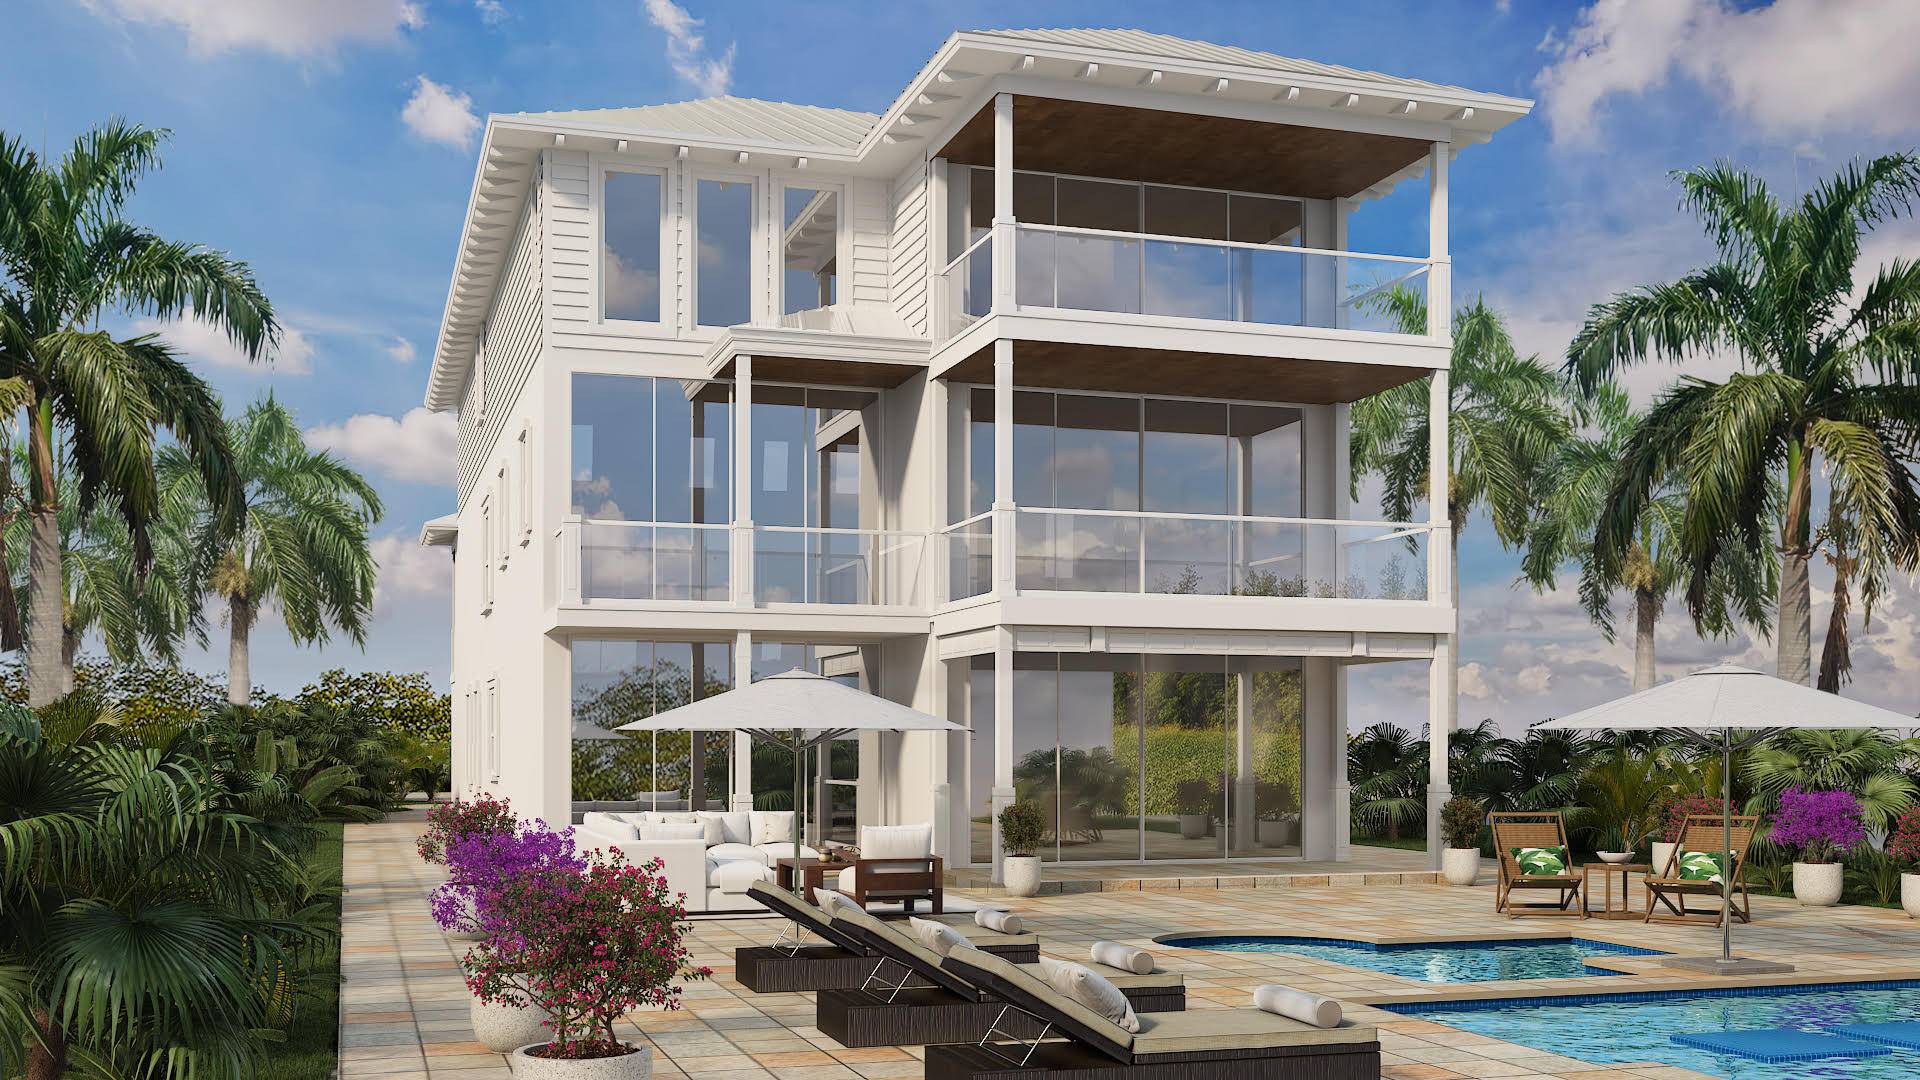 VERO BEACH OCEAN CLUB ON BILLIONAIRE'S ROW NEXT TO THE 10, 000, 000 TO 60, 000, 000 OCEANFRONT ESTATES ON '' BILLIONAIRE'S ROW ''7 Oceanfront Estate Homes 31 Estate Homes ...